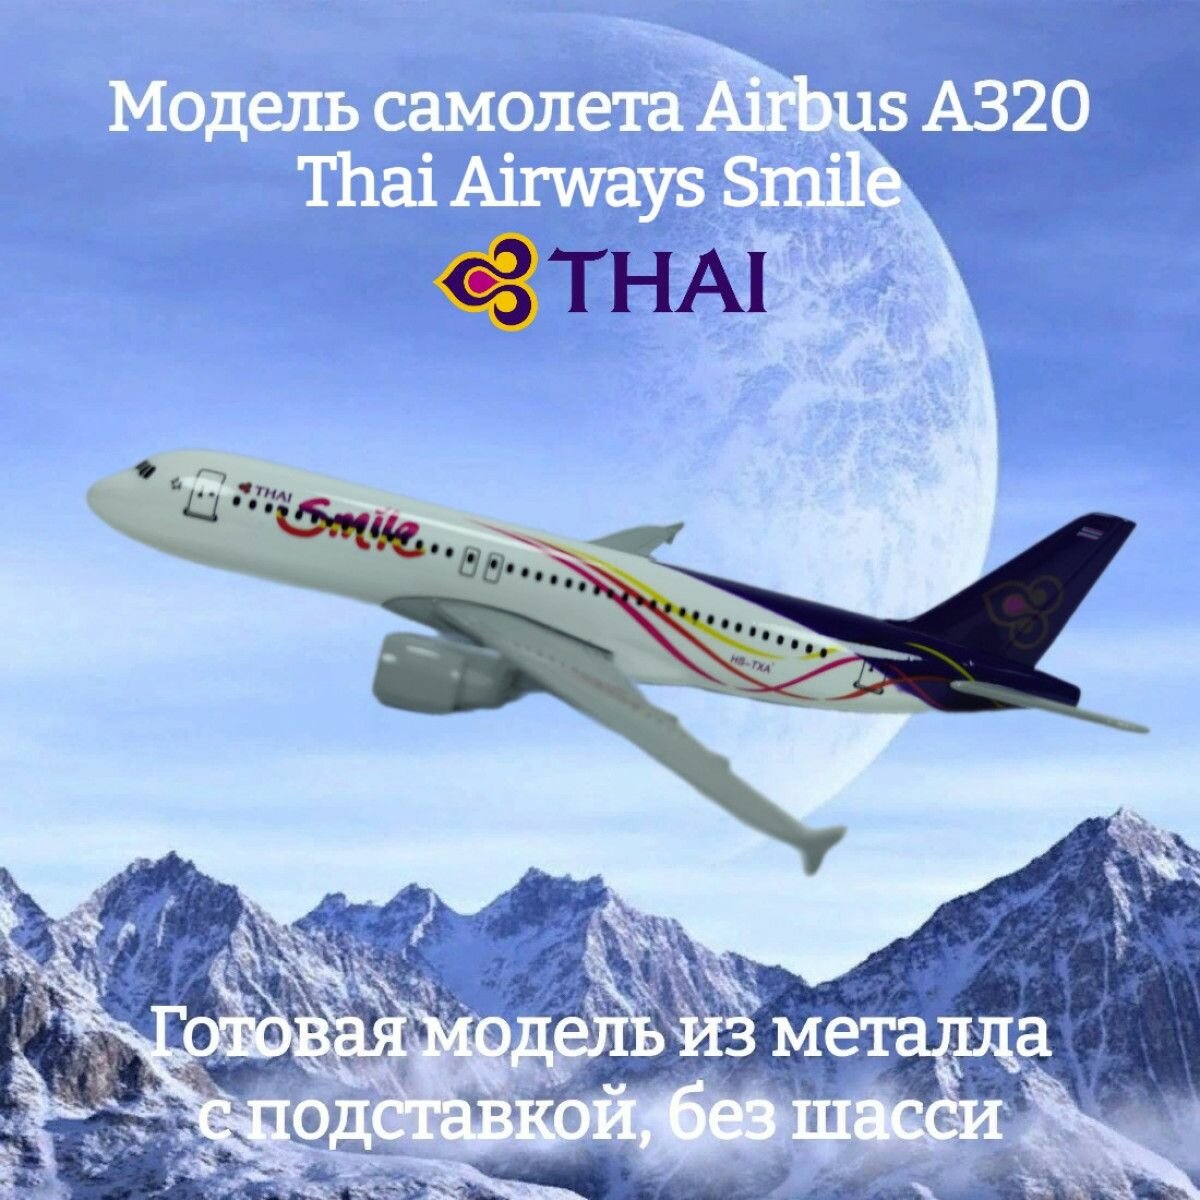 Модель самолета Airbus A320 Thai Airways Smile длина 16 см (без шасси)